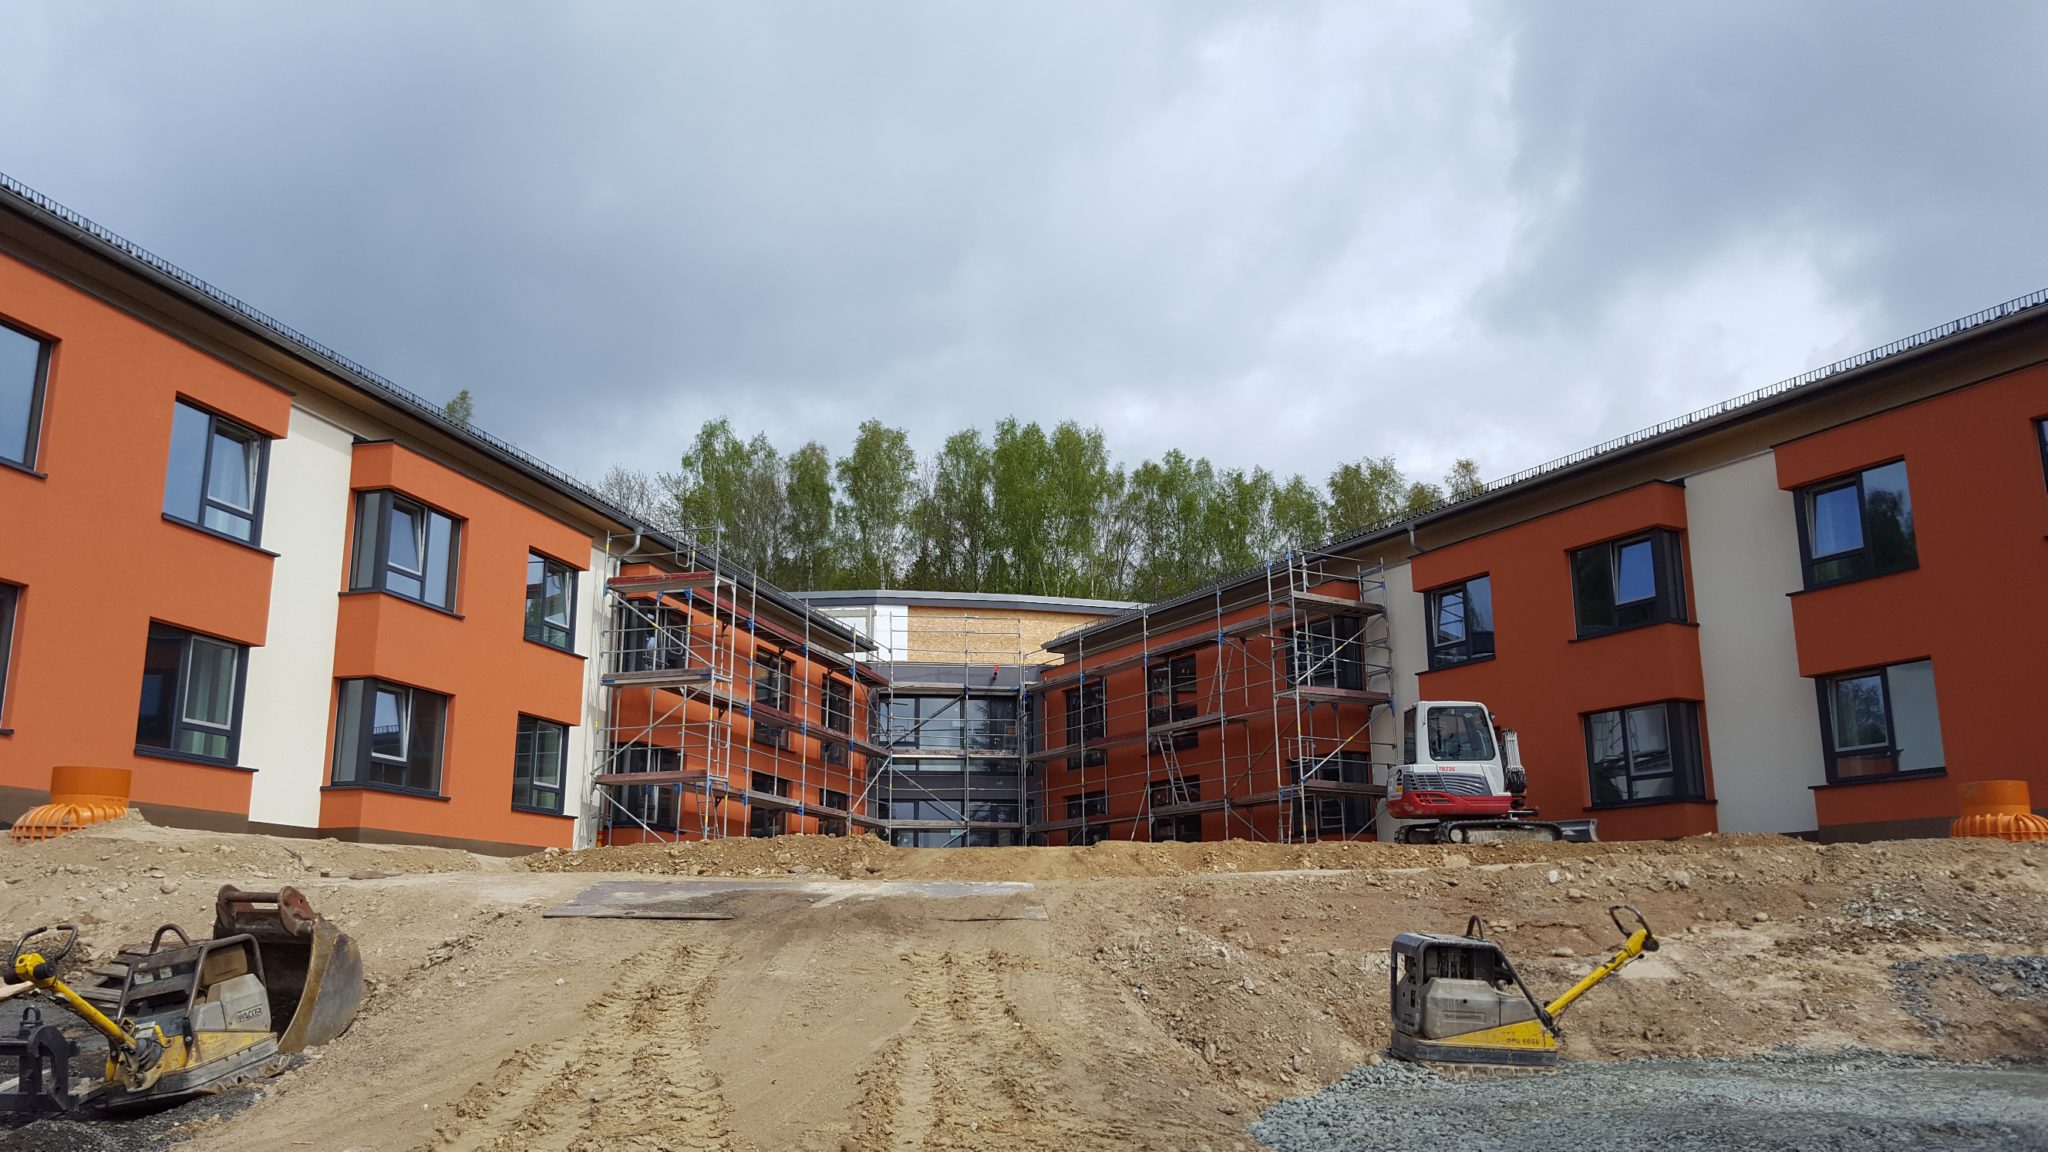 Tag der offenen Baustelle 2019 in Bad Elster